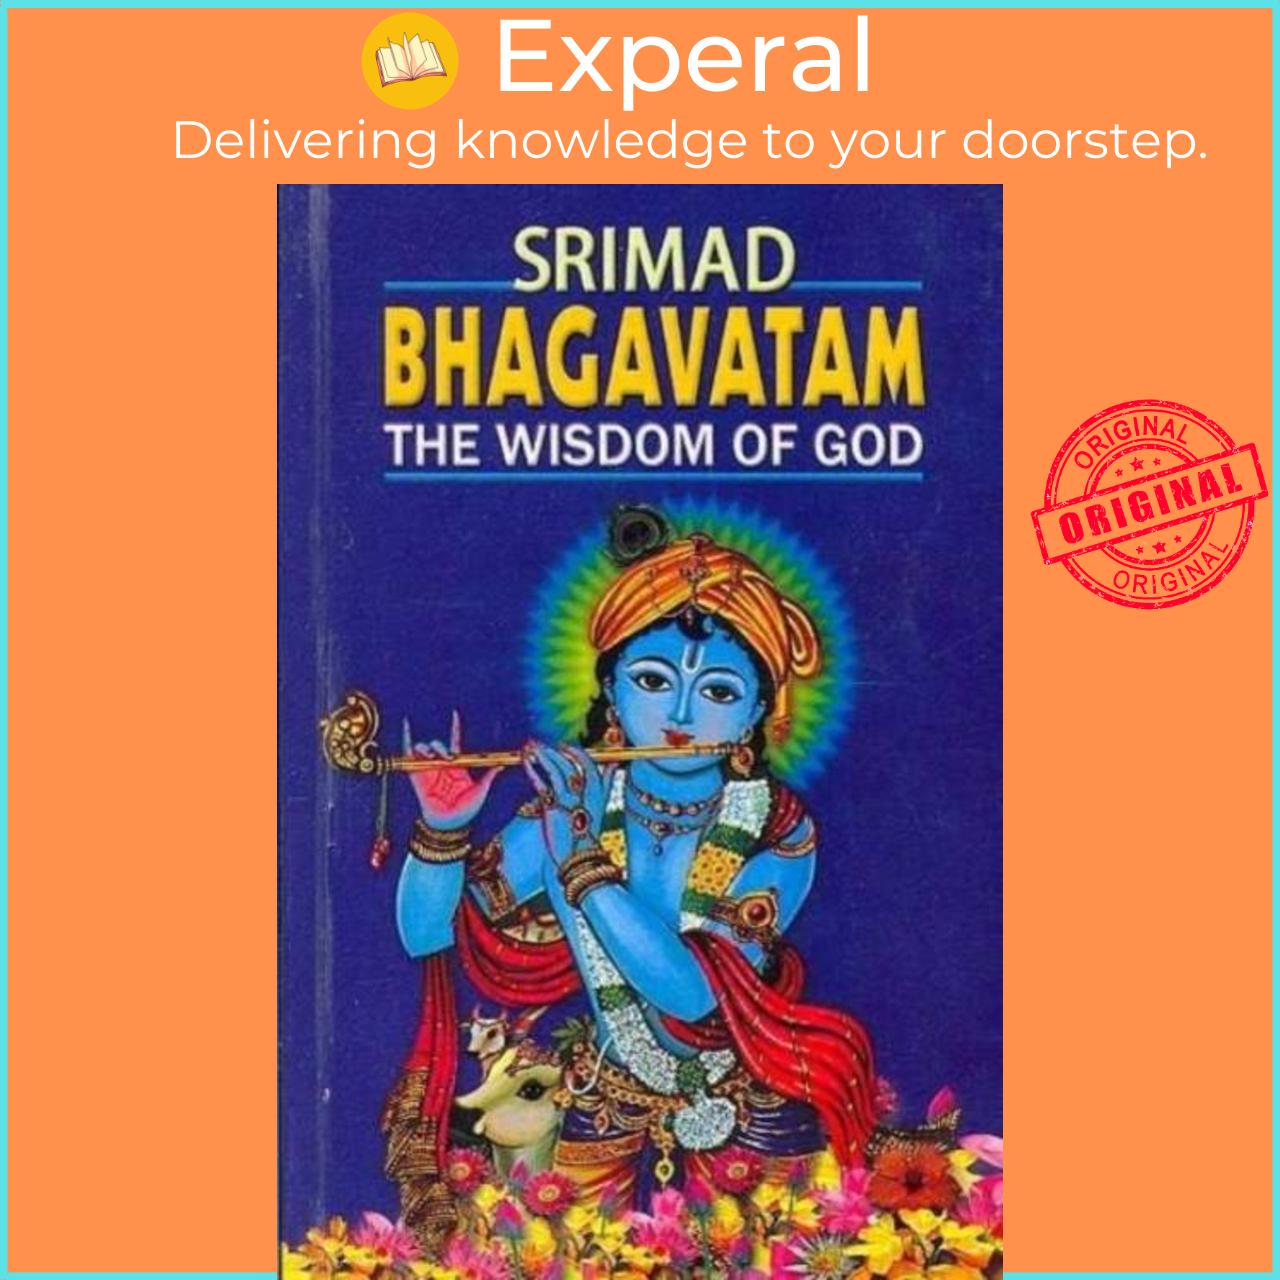 Sách - Srimad Bhagavatam by Swami Prabhavananda (UK edition, paperback)